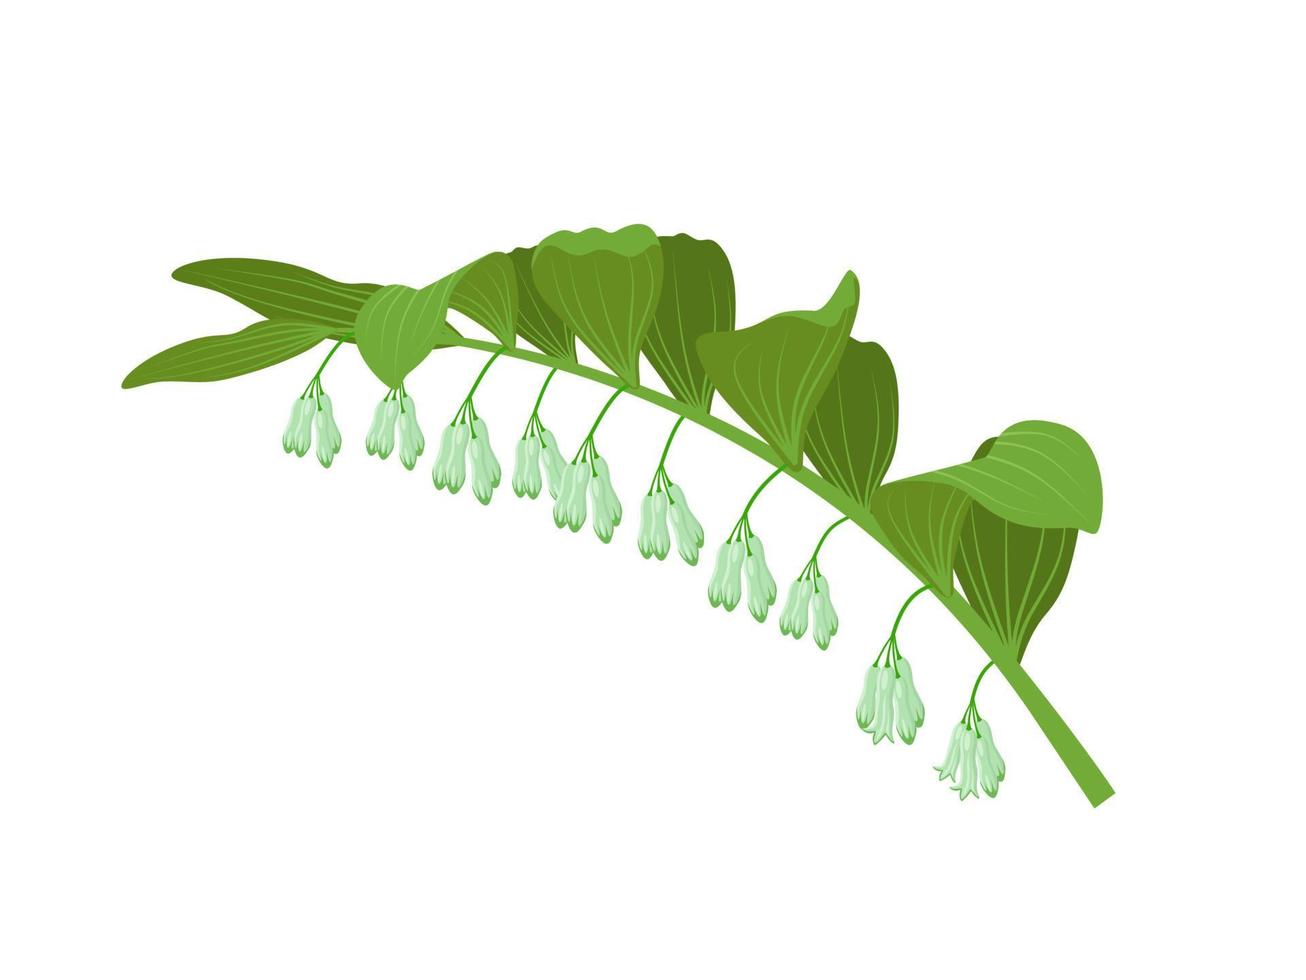 ilustração vetorial, planta de selo de salomão, nome científico polygonatum odoratum, isolado em um fundo branco. vetor